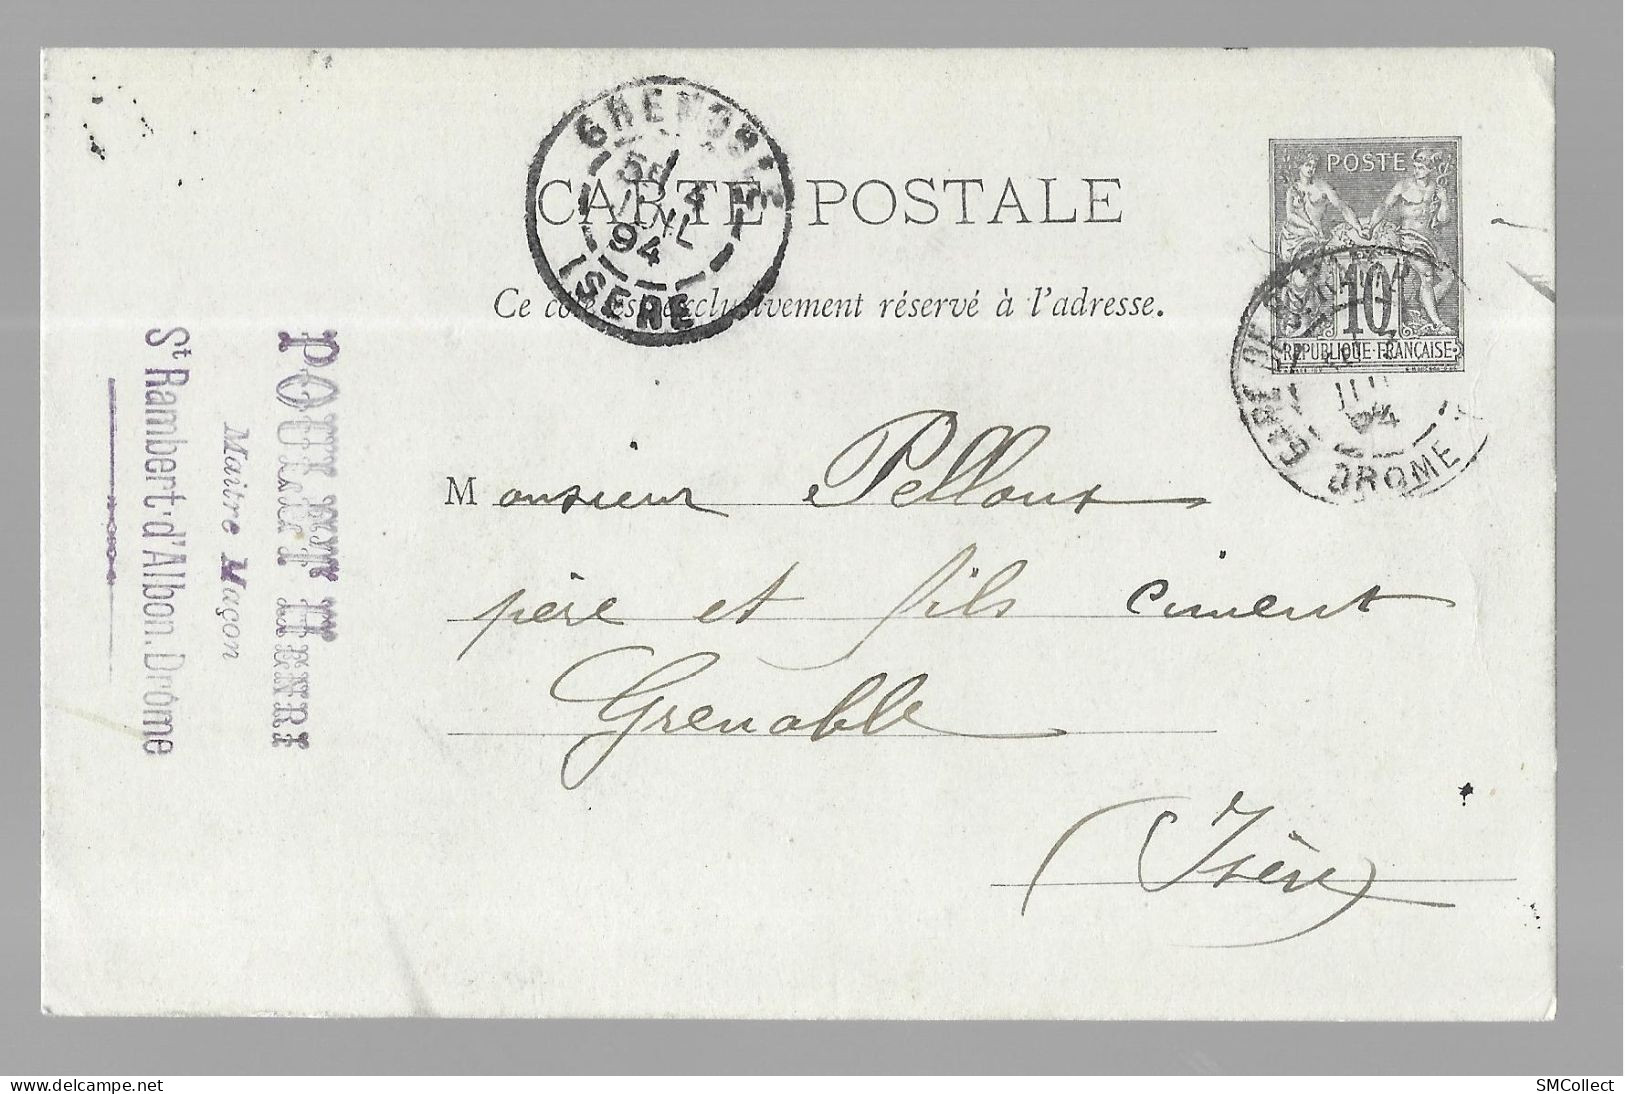 Entier Postal, Sage 10 Centimes Noir Voyagé En Juillet 1894, De Saint Rambert D'Albon Gare Vers Grenoble (13573) - Standard- Und TSC-AK (vor 1995)